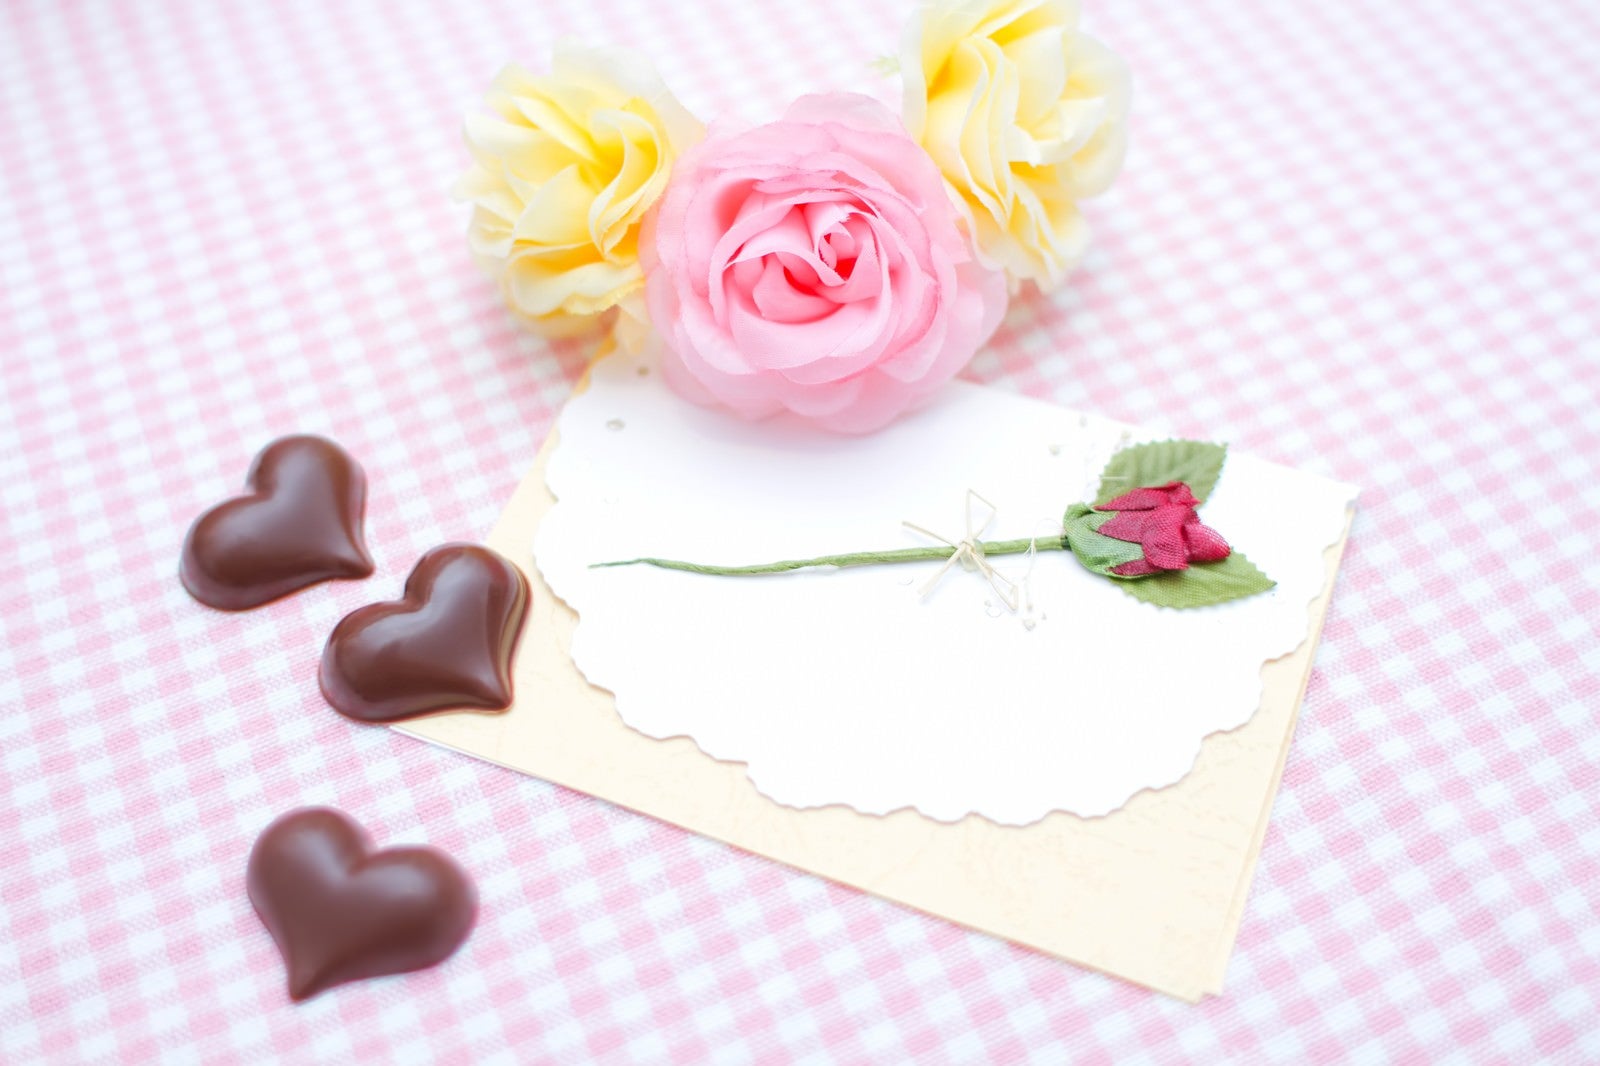 「薔薇の造花と手紙・ハート型のチョコ」の写真